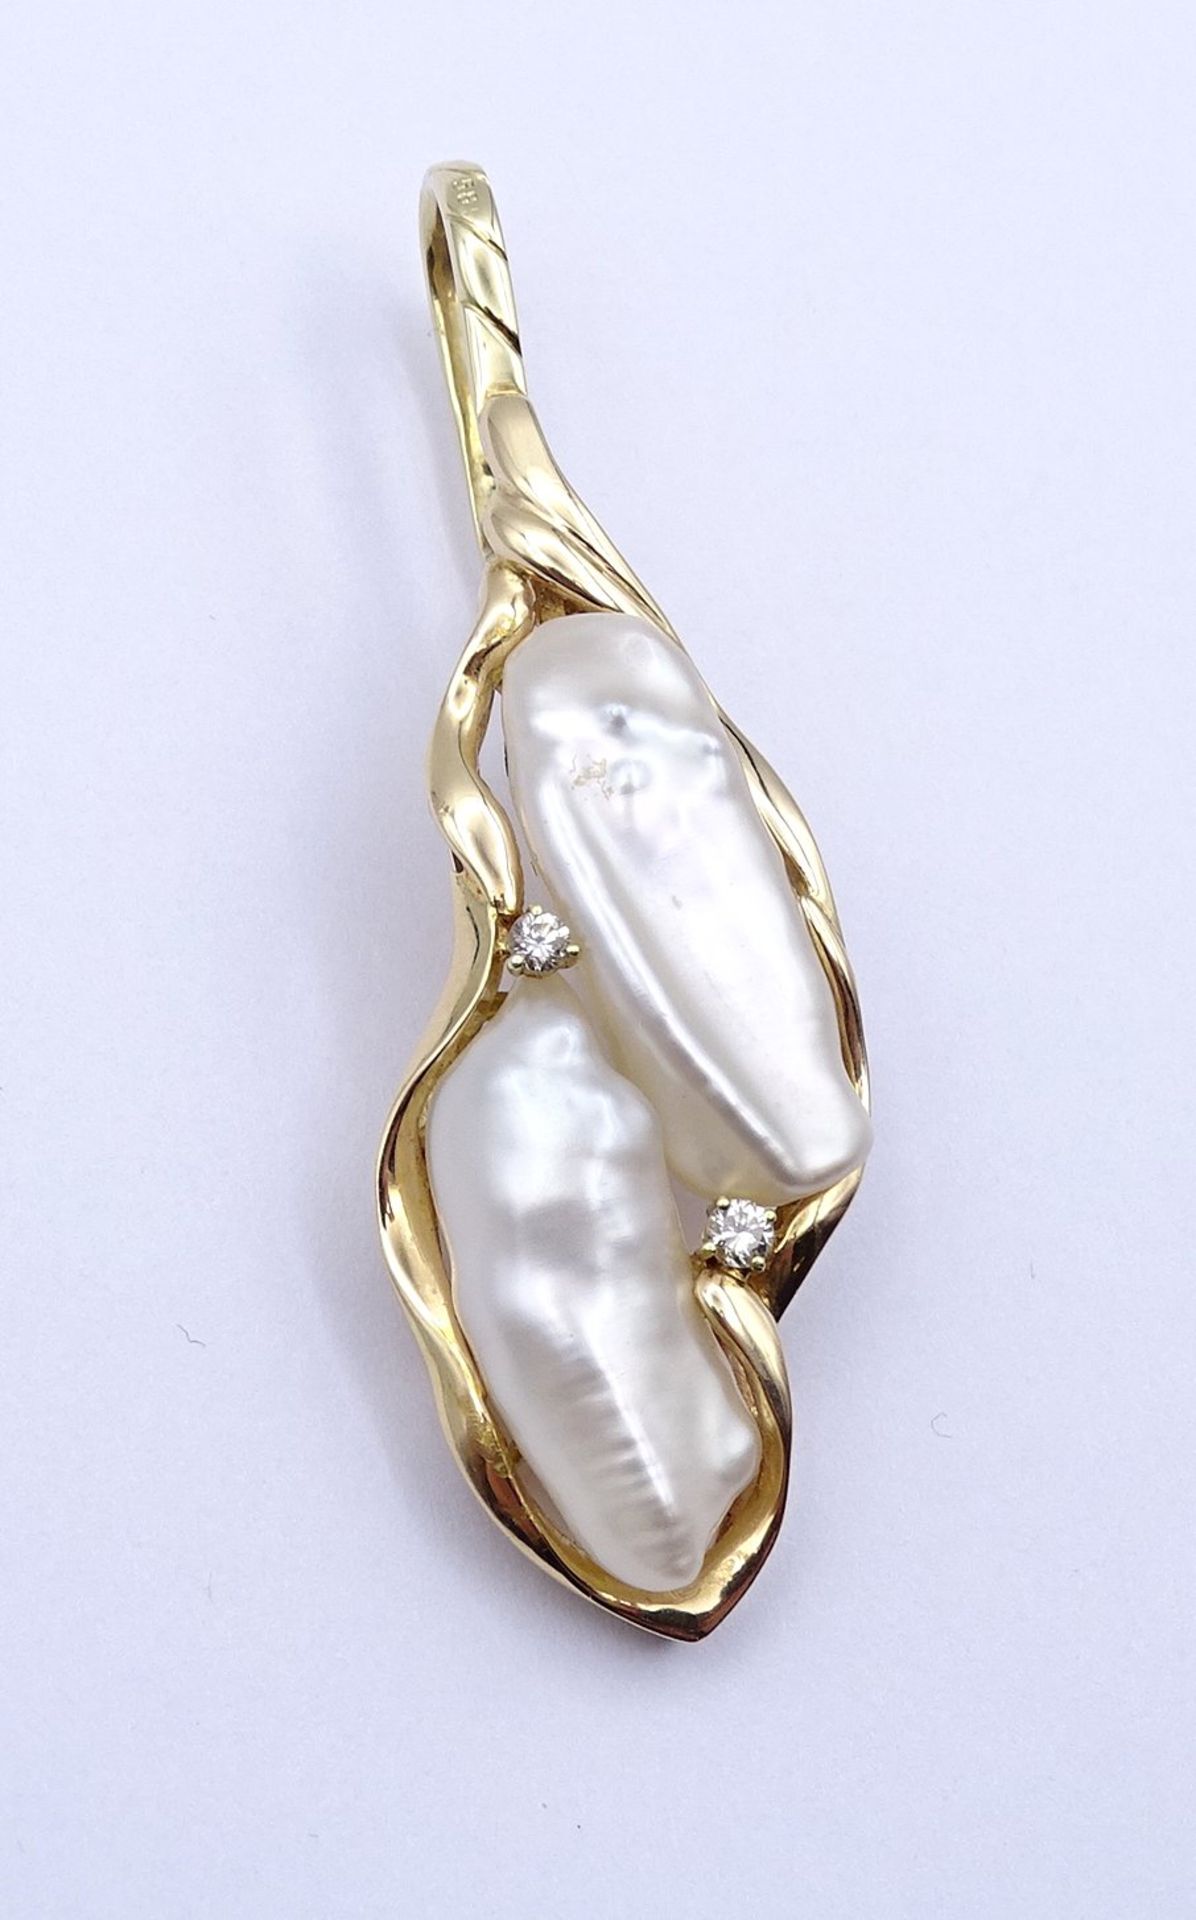 Schöner Gold Anhänger 585/000 mit Perlen und Brillanten, L. 6,1cm, 10,2g.